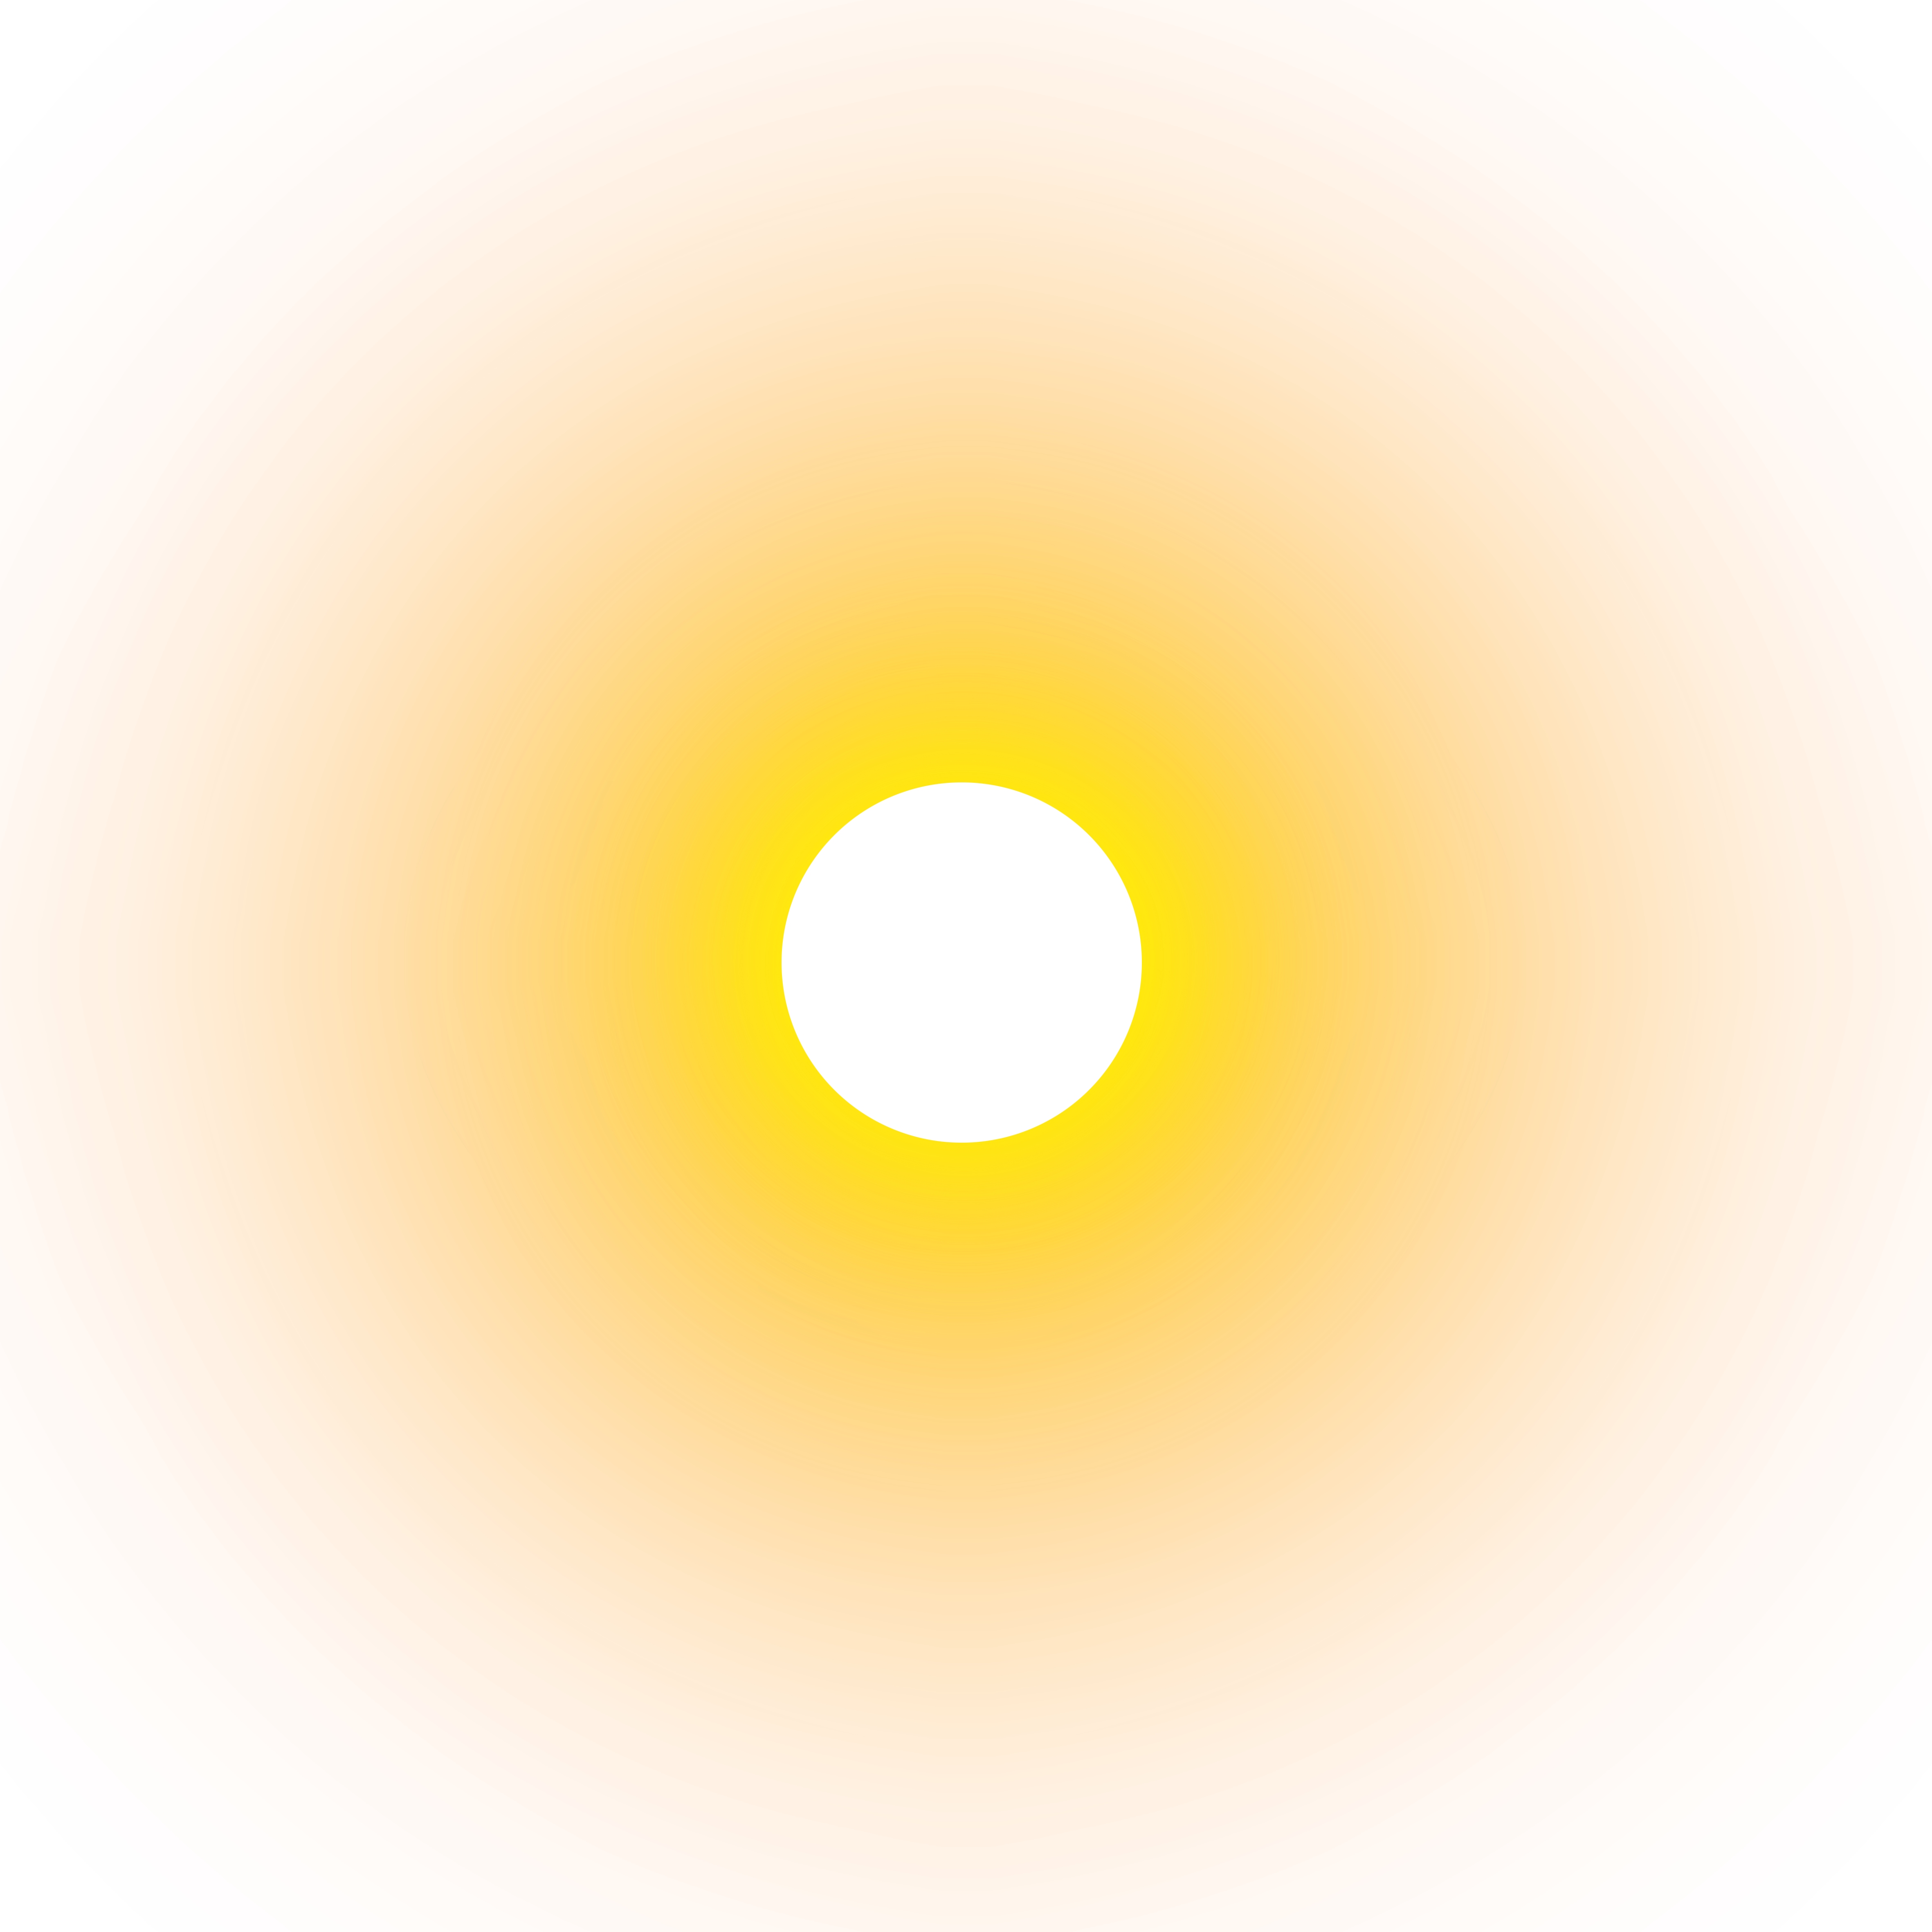 The Sun Png - KibrisPDR